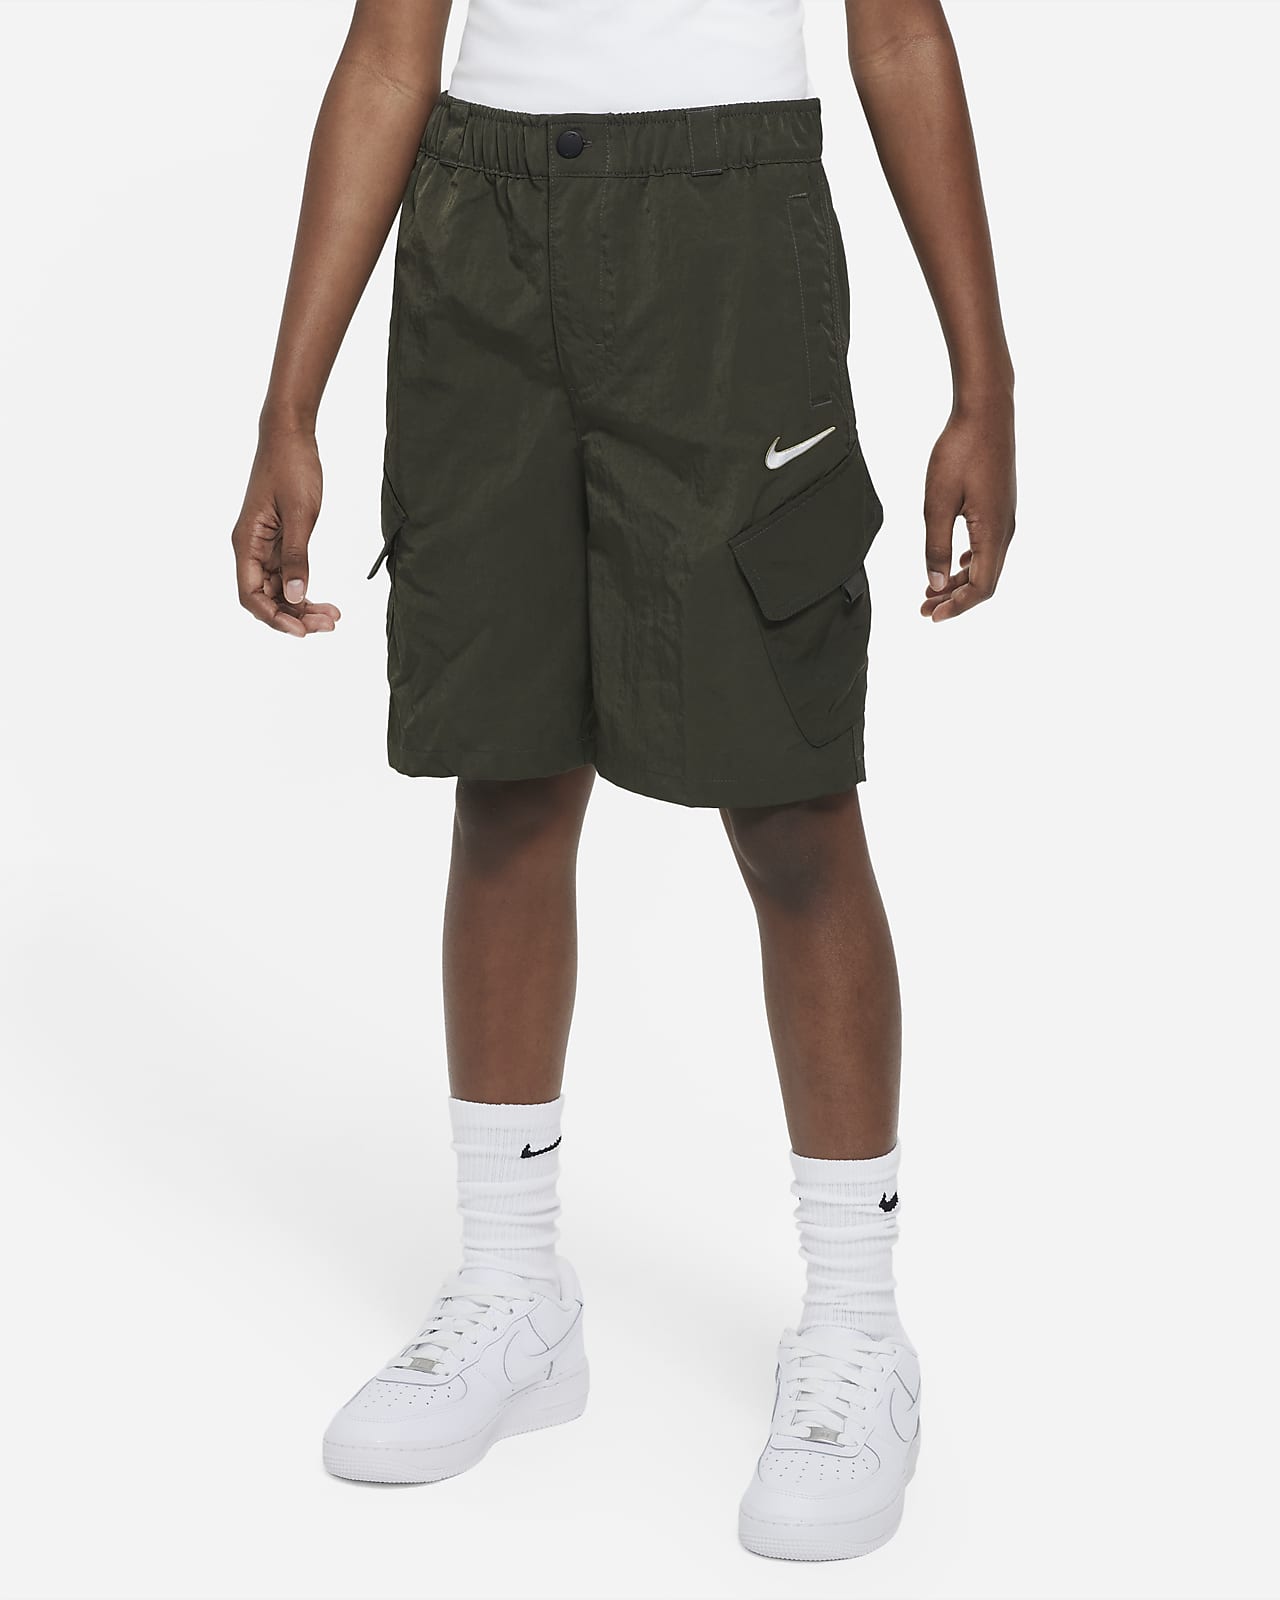 Nike Outdoor Play Pantalons curts cargo de teixit Woven - Nen/a